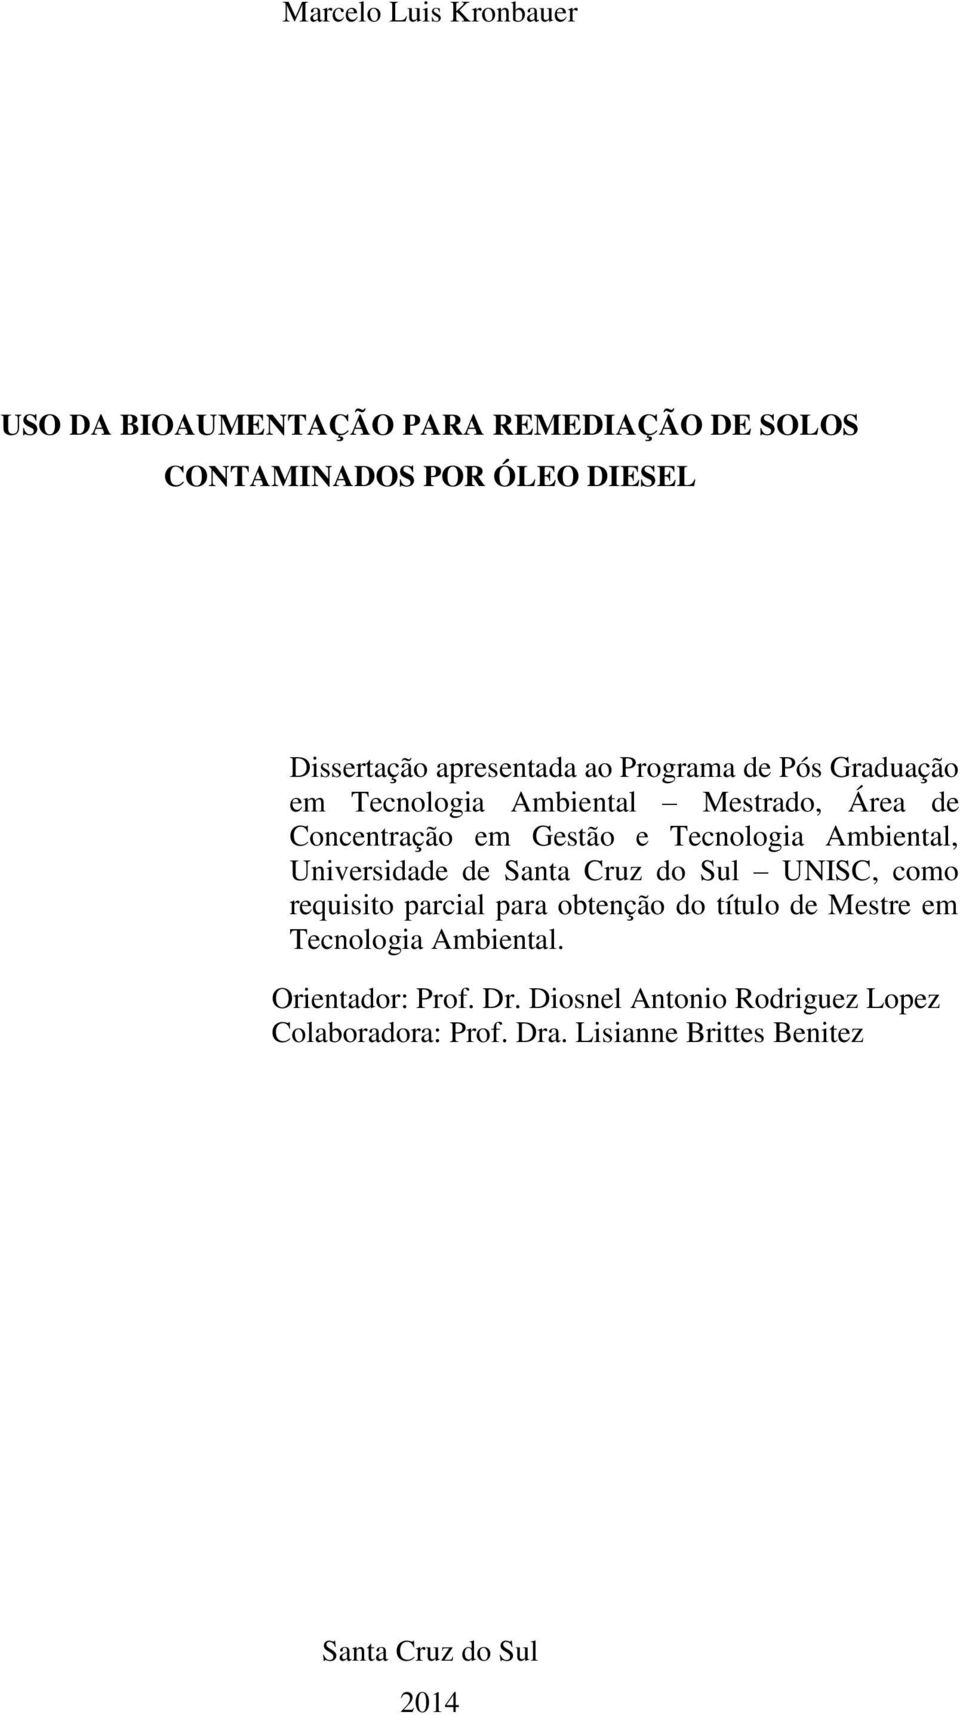 Ambiental, Universidade de Santa Cruz do Sul UNISC, como requisito parcial para obtenção do título de Mestre em Tecnologia